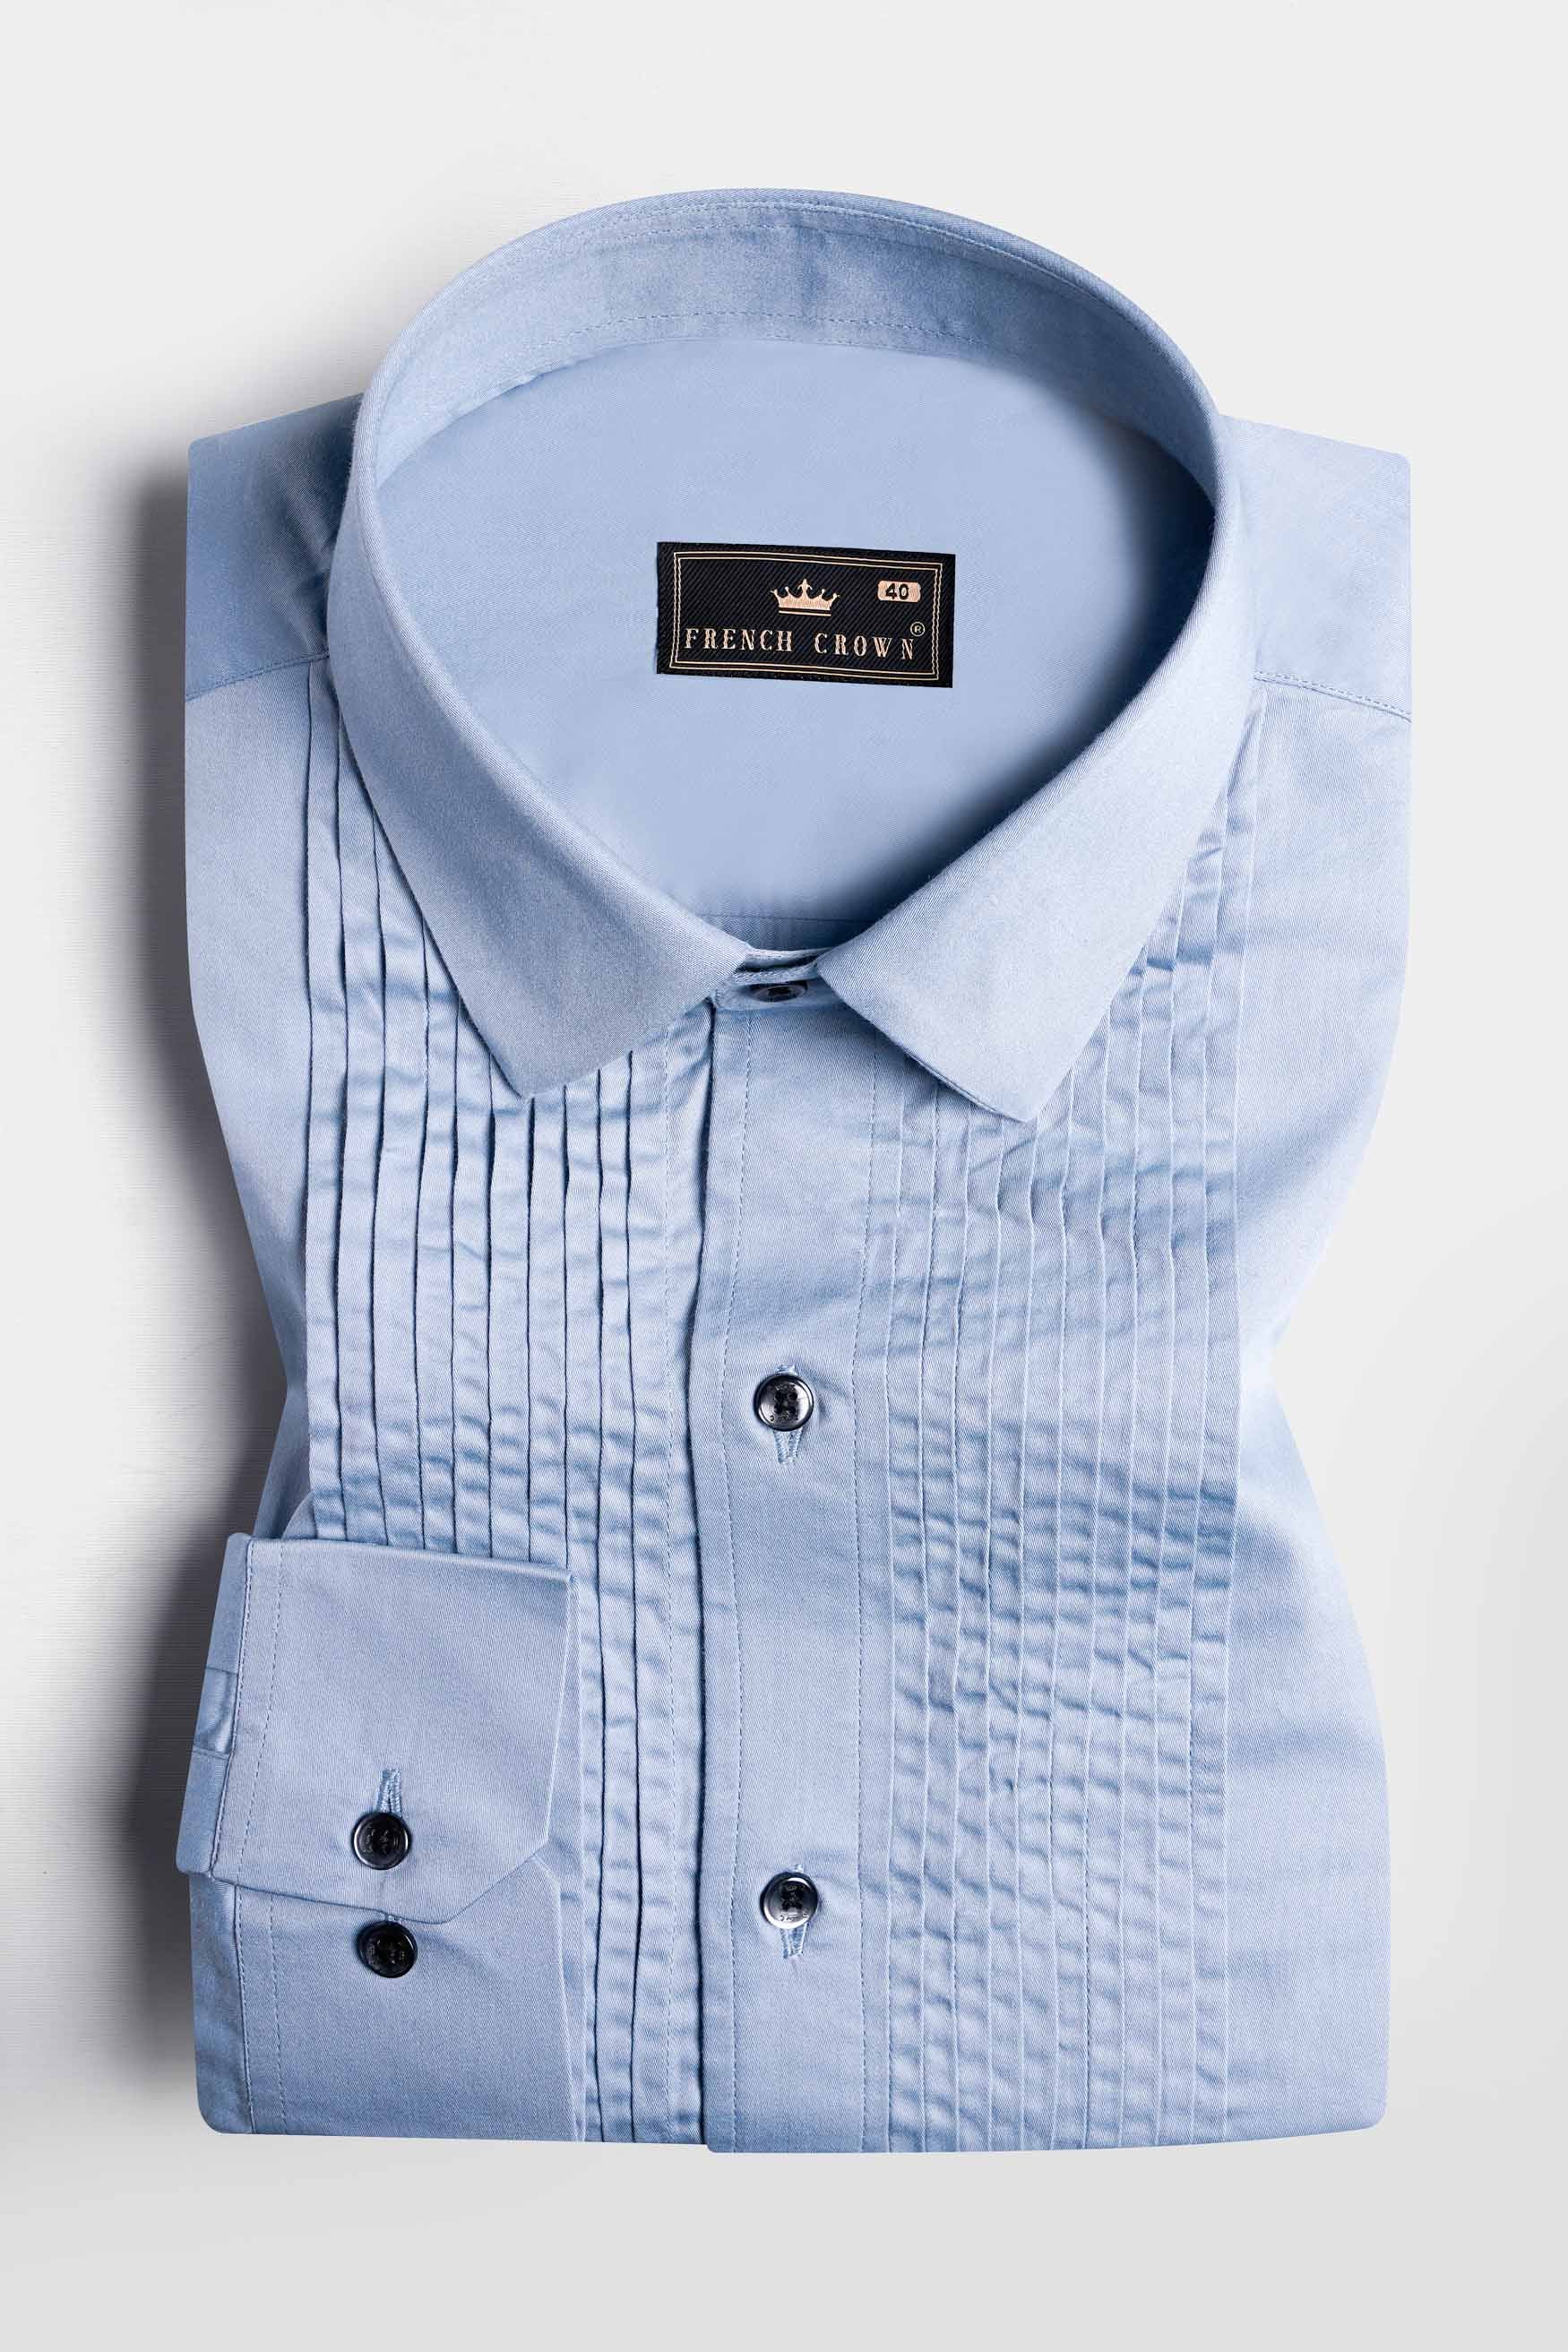 Periwinkle Blue Subtle Sheen Super Soft Premium Cotton Tuxedo Shirt